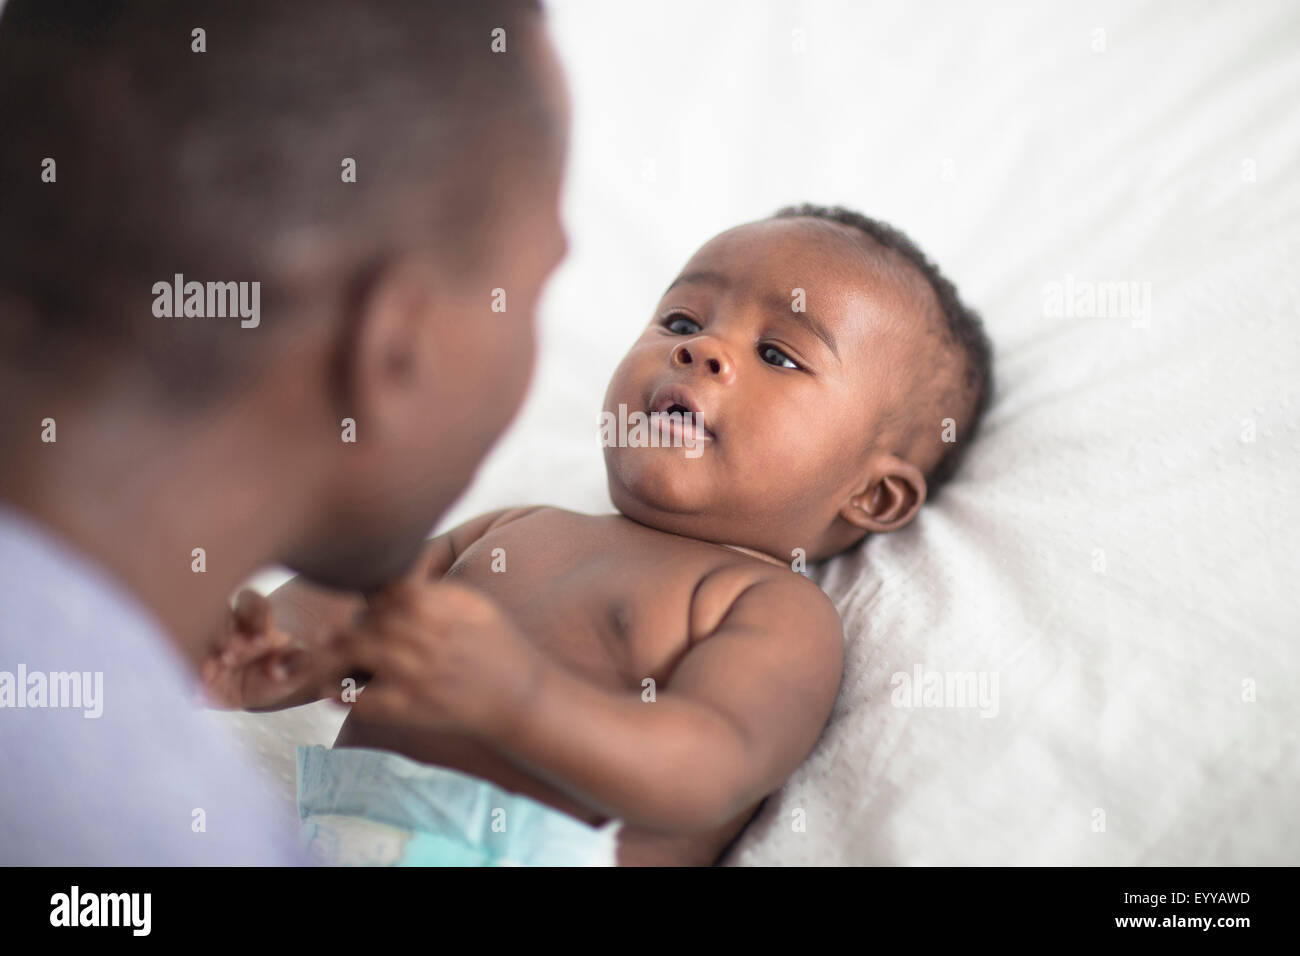 Chiusura del padre nero giocando con il bambino sul letto Foto Stock